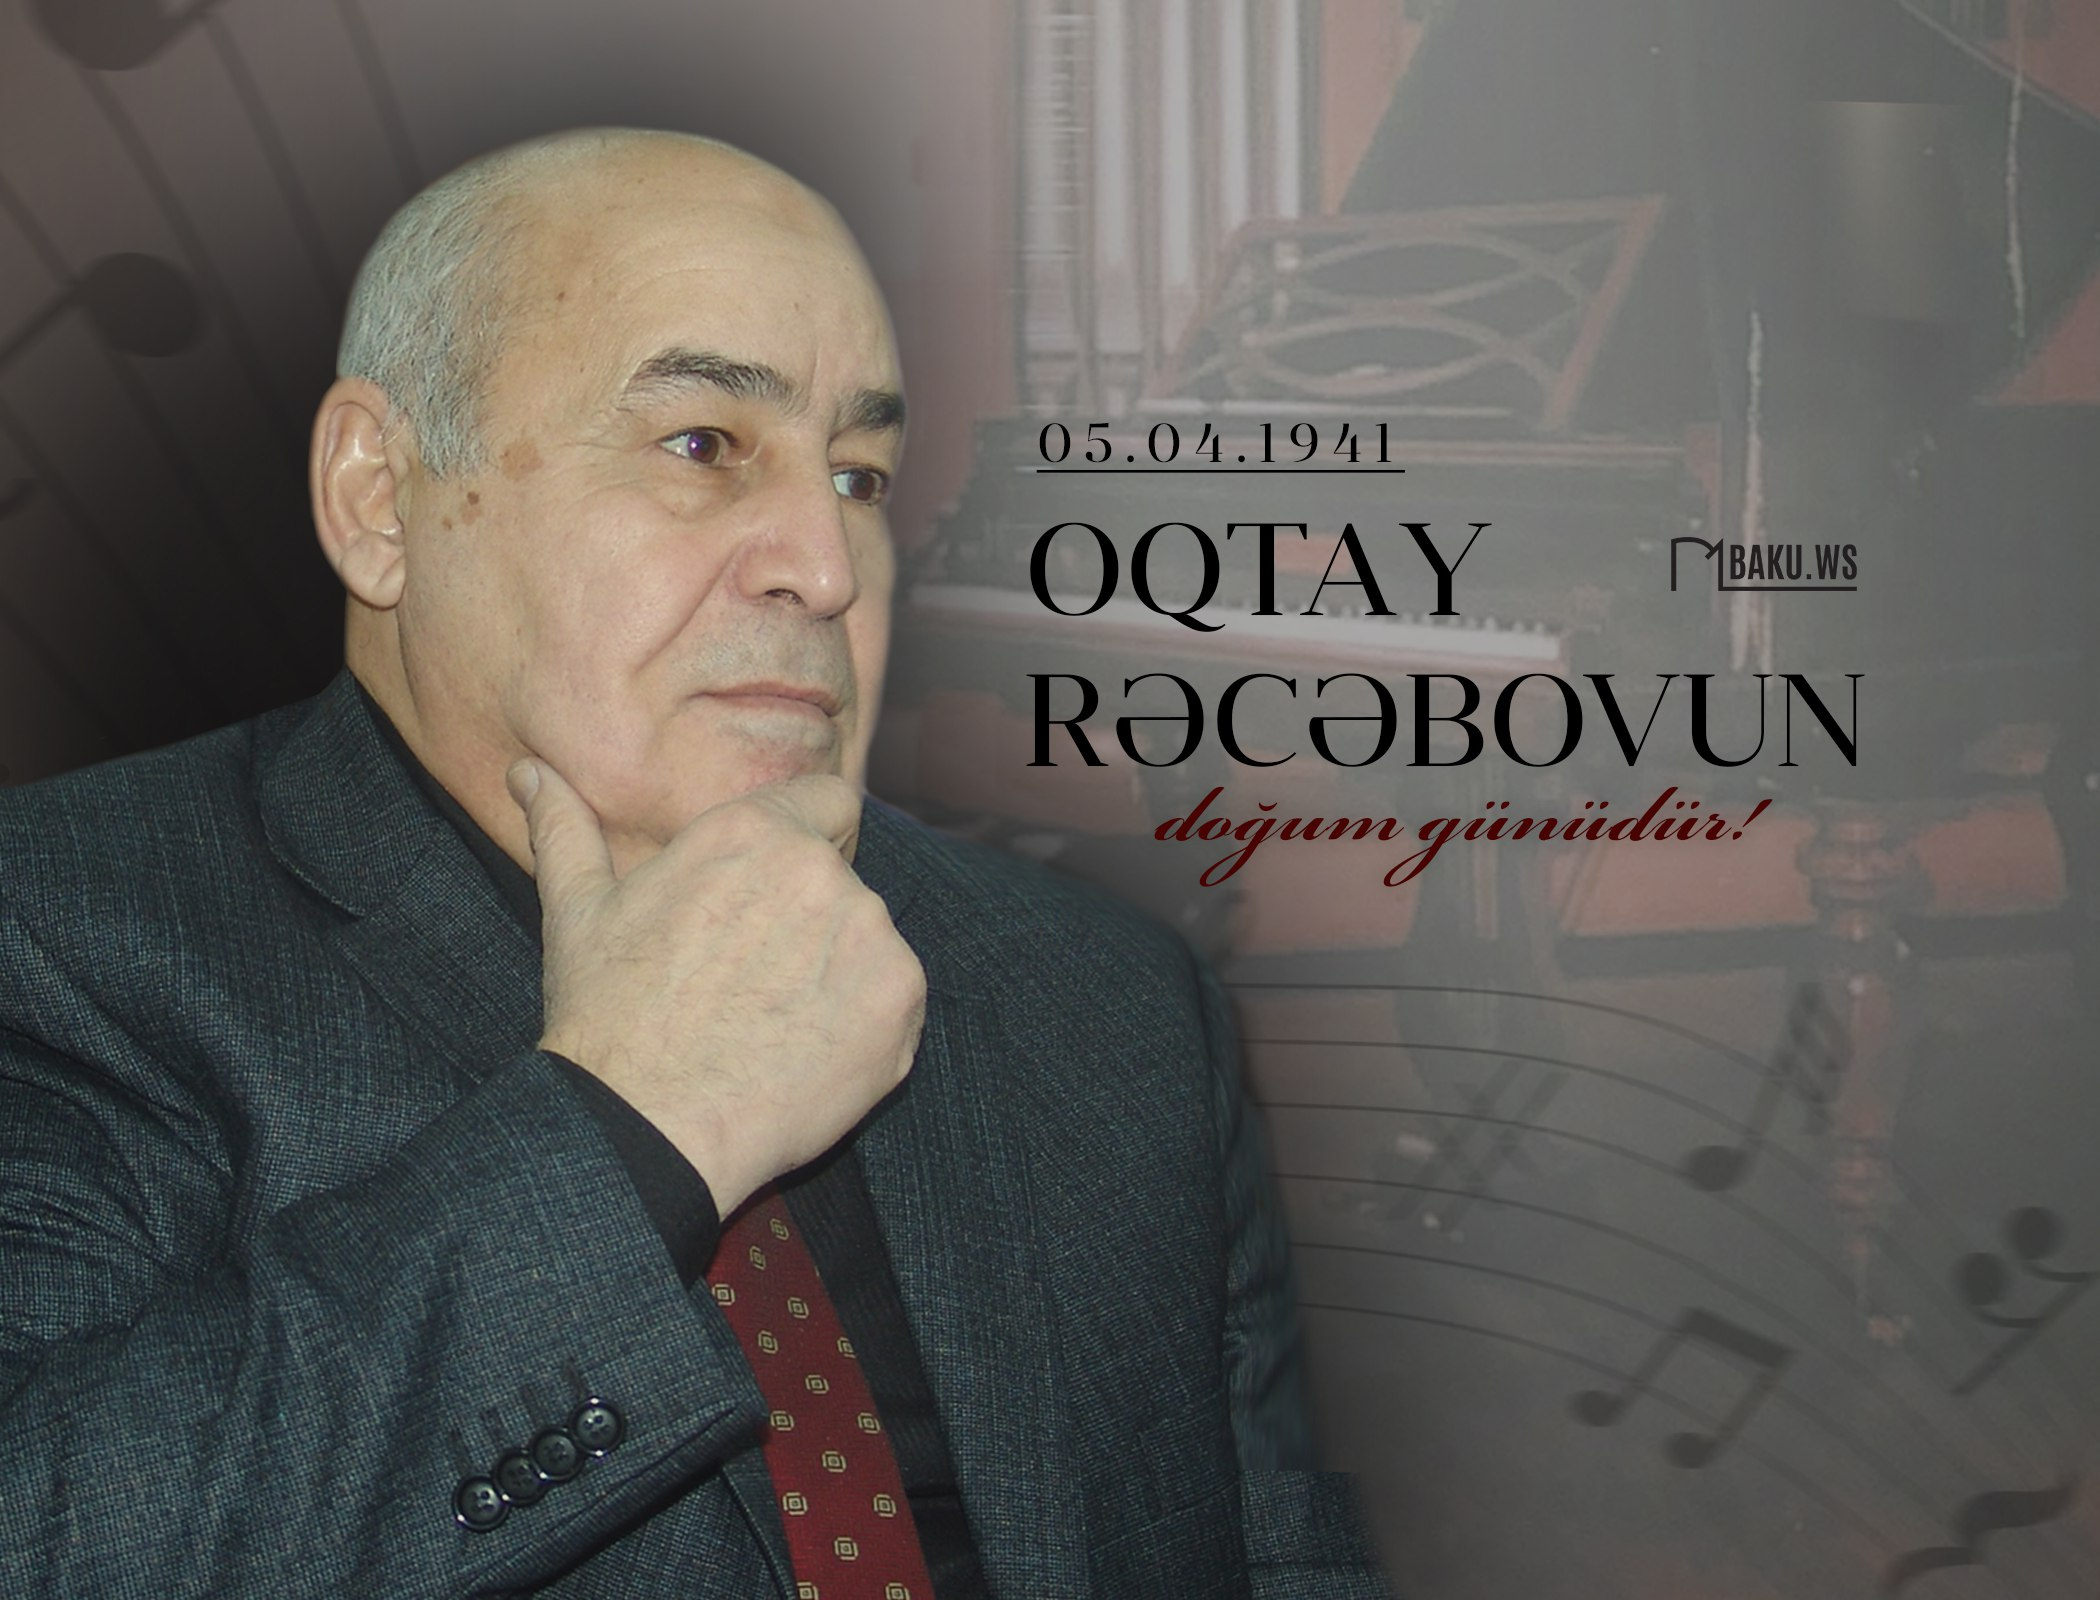 Bu gün tanınmış bəstəkar Oqtay Rəcəbovun doğum günüdür